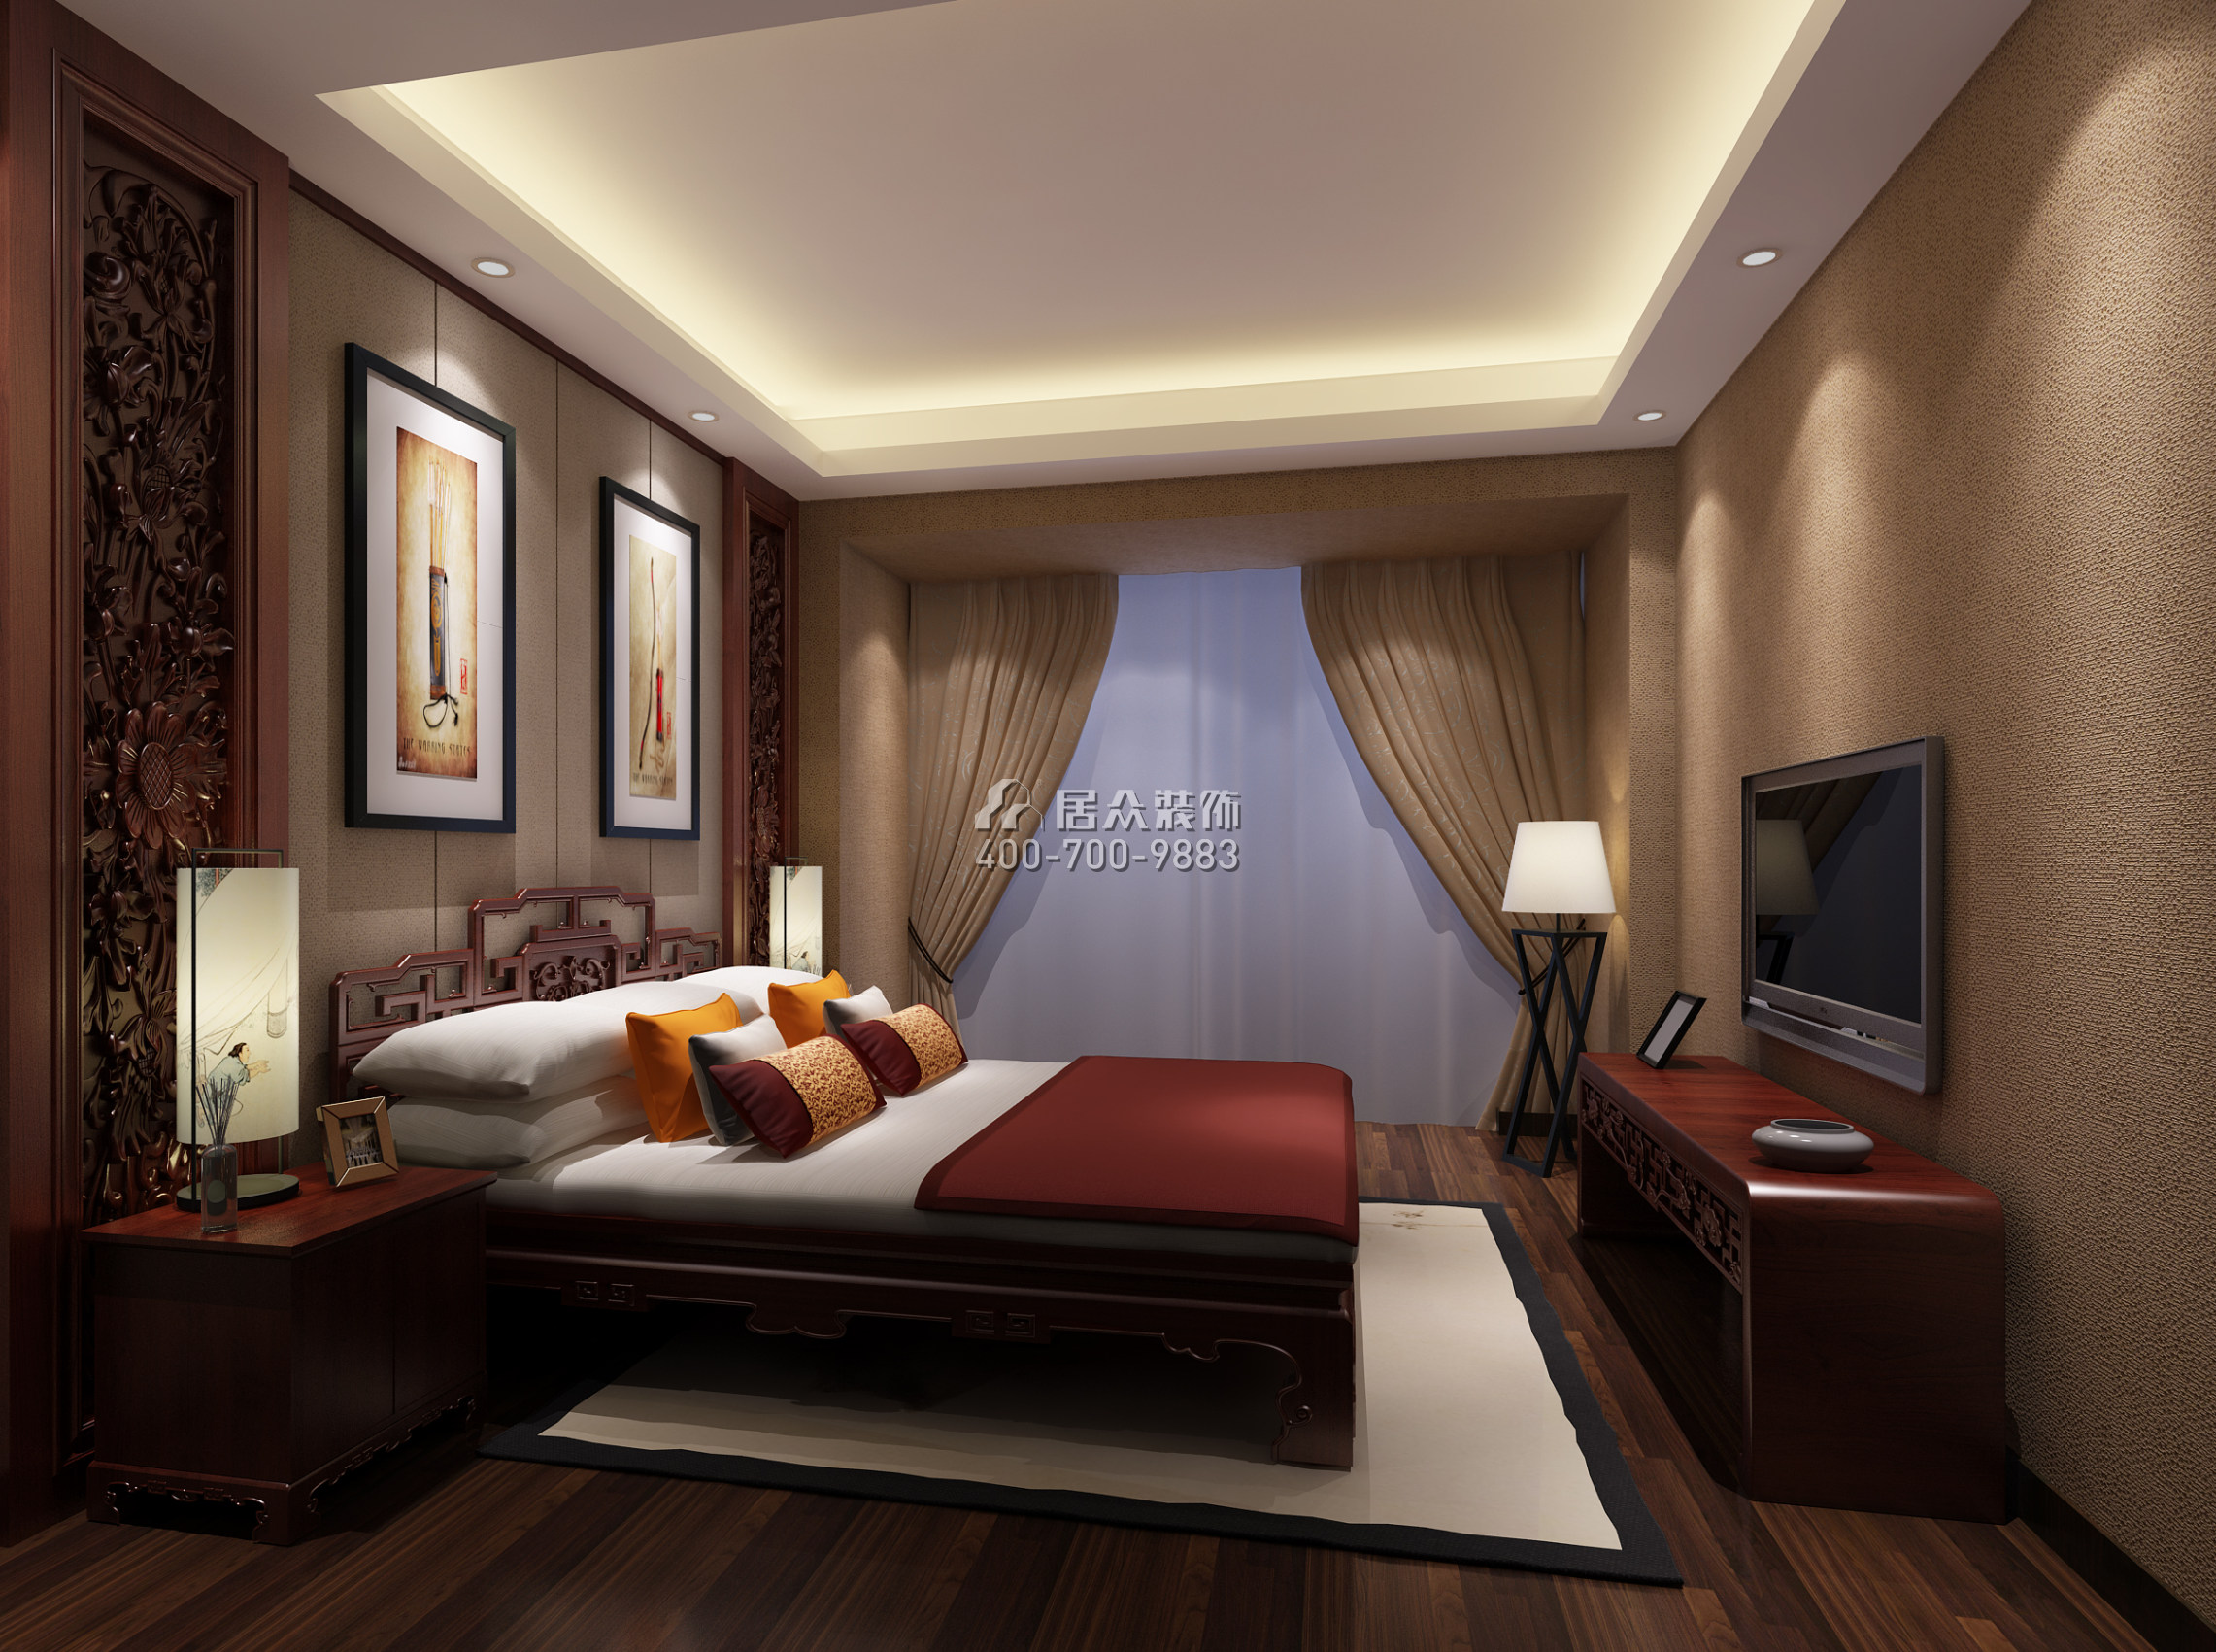 中洲中央公园160平方米中式风格平层户型卧室装修效果图